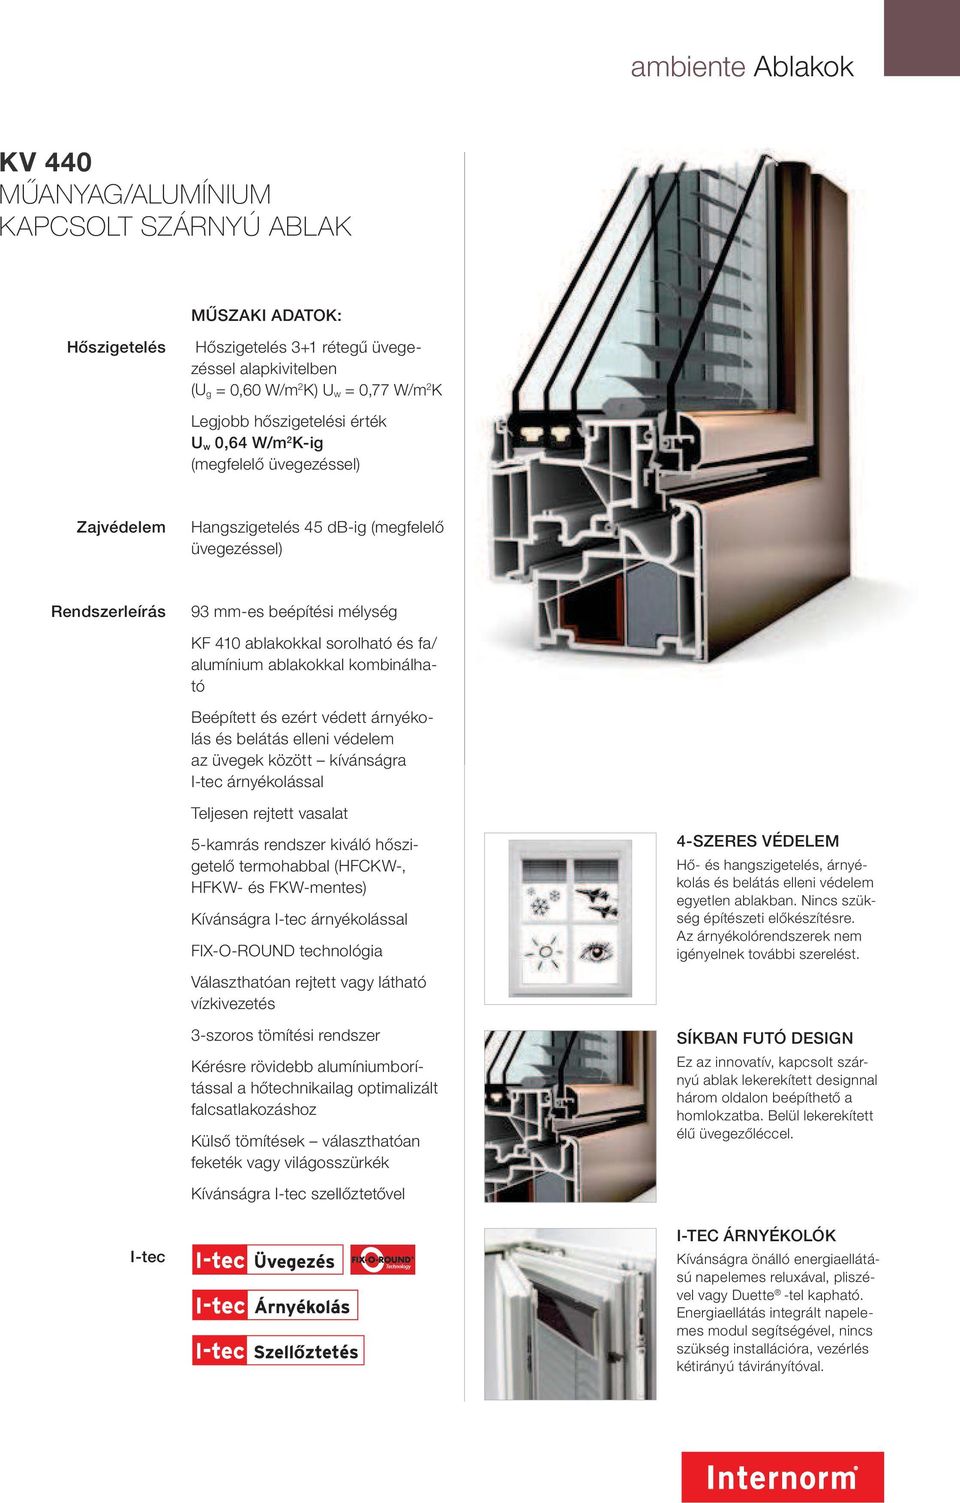 alumínium ablakokkal kombinálható Beépített és ezért védett árnyékolás és belátás elleni védelem az üvegek között kívánságra I-tec árnyékolással Teljesen rejtett vasalat 5-kamrás rendszer kiváló